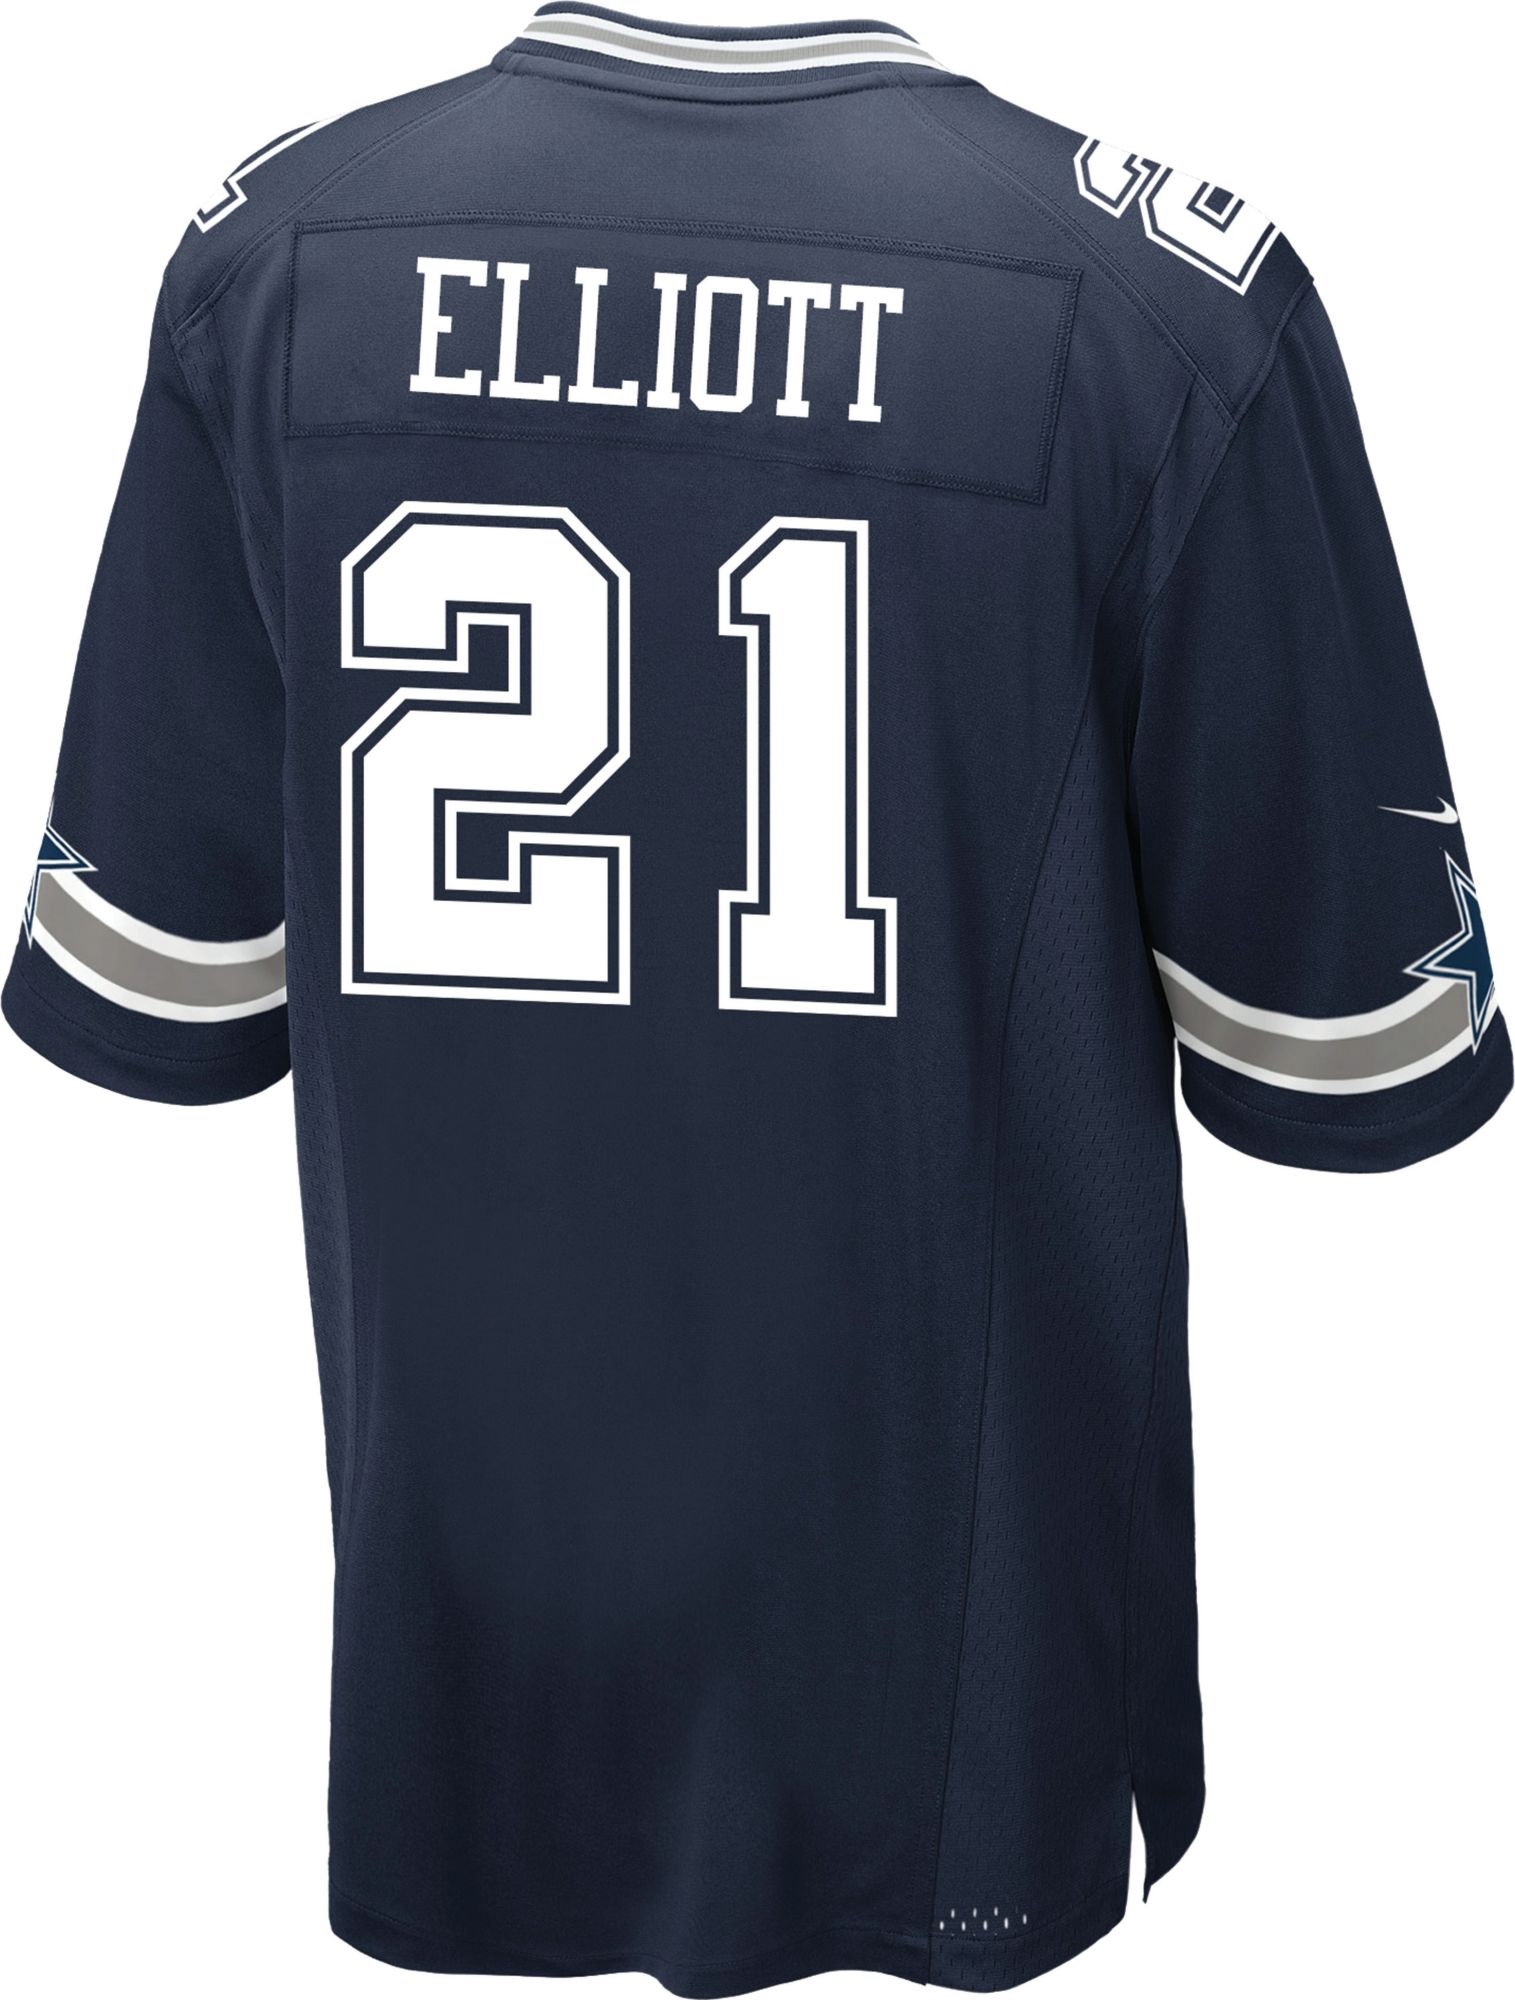 Dallas Cowboys Ezekiel Elliott 